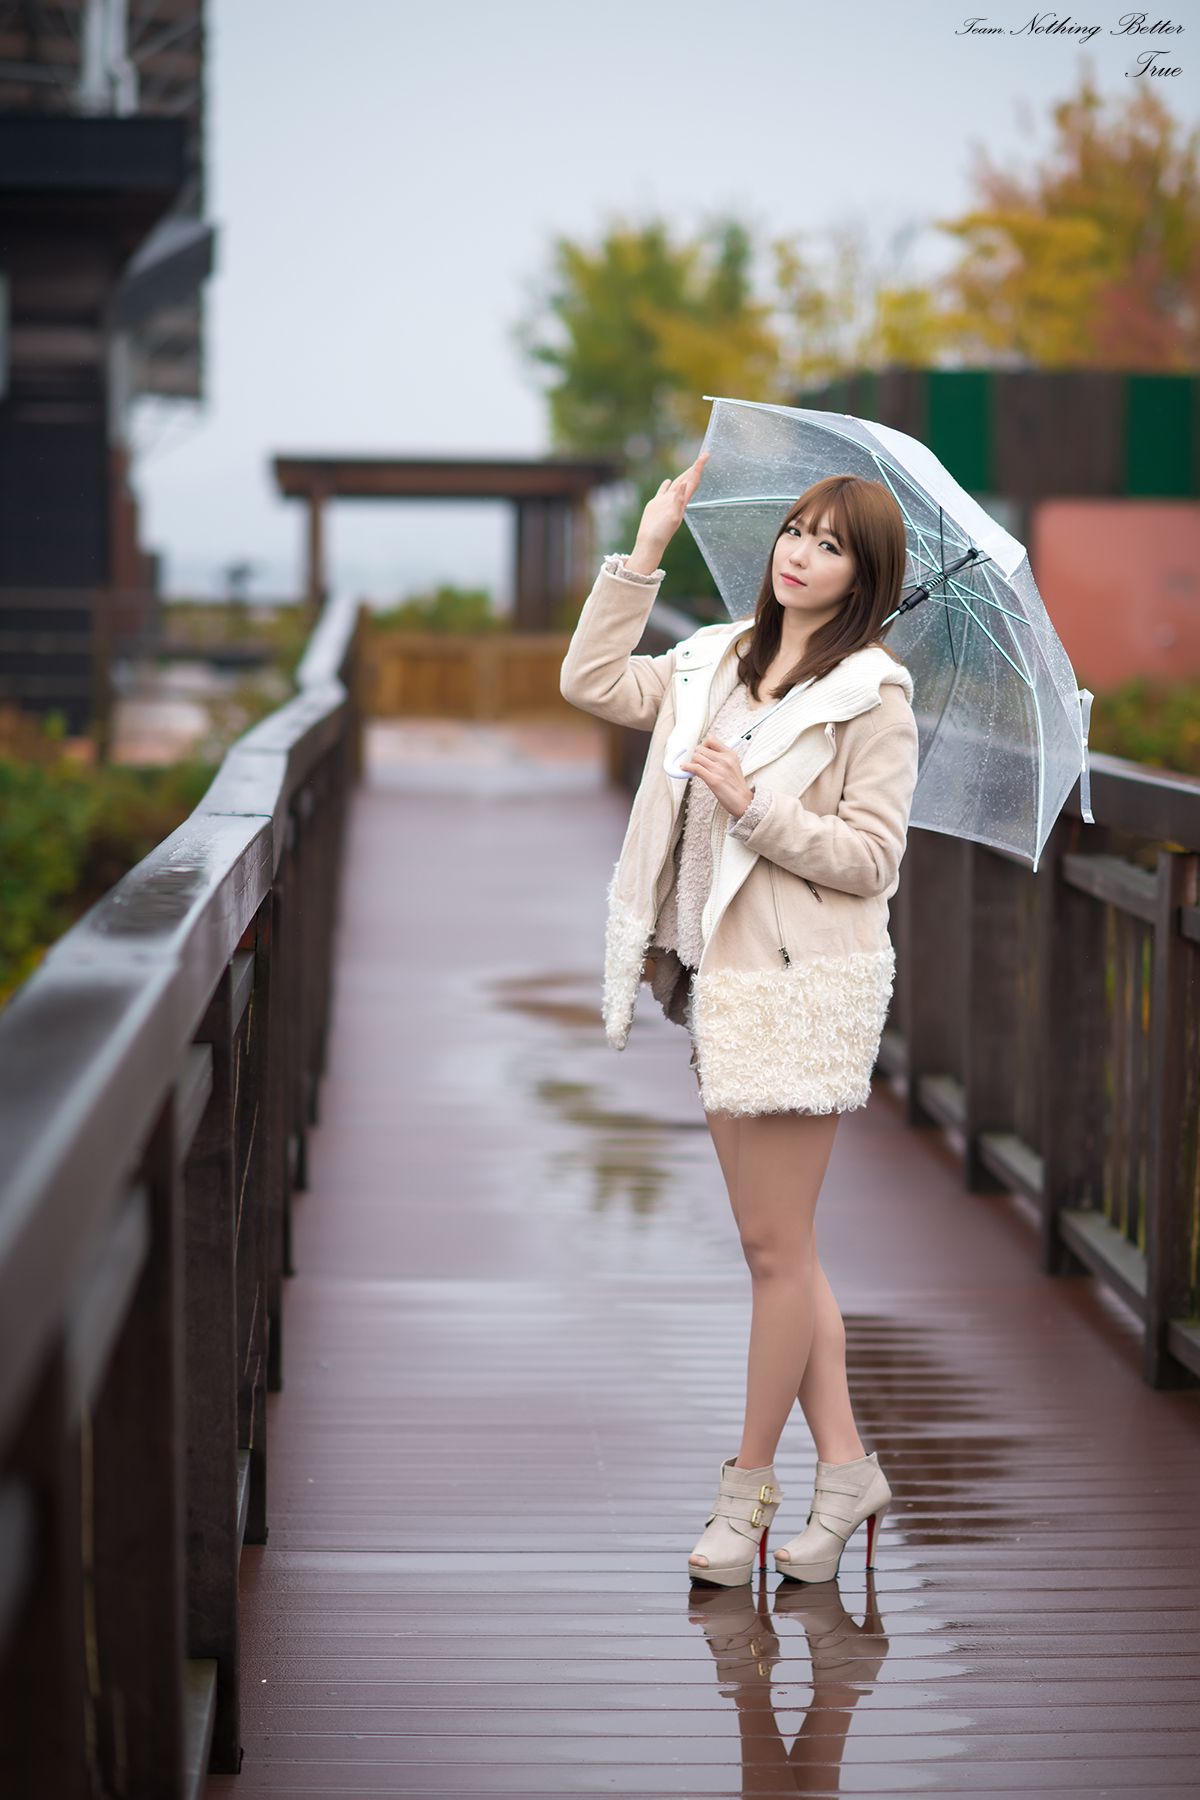 极品韩国美女李恩慧《下雨天街拍》  第9张